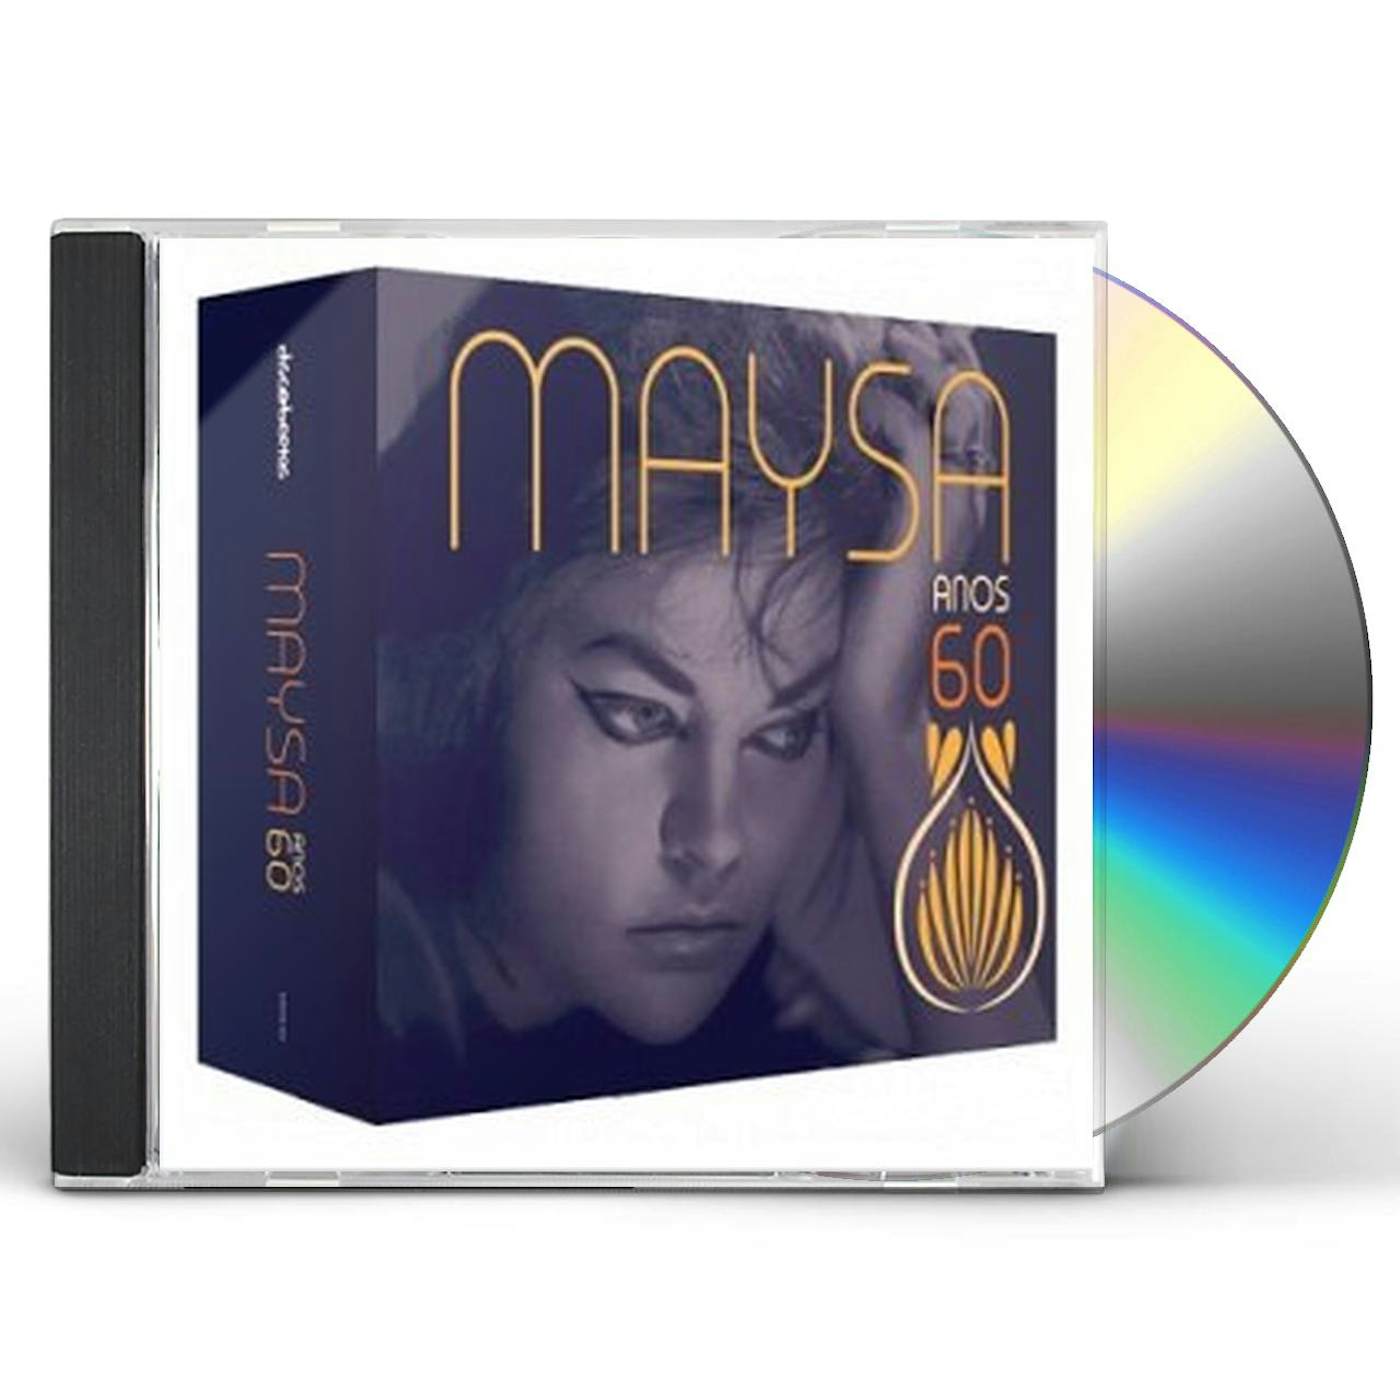 Maysa ANOS 60 CD